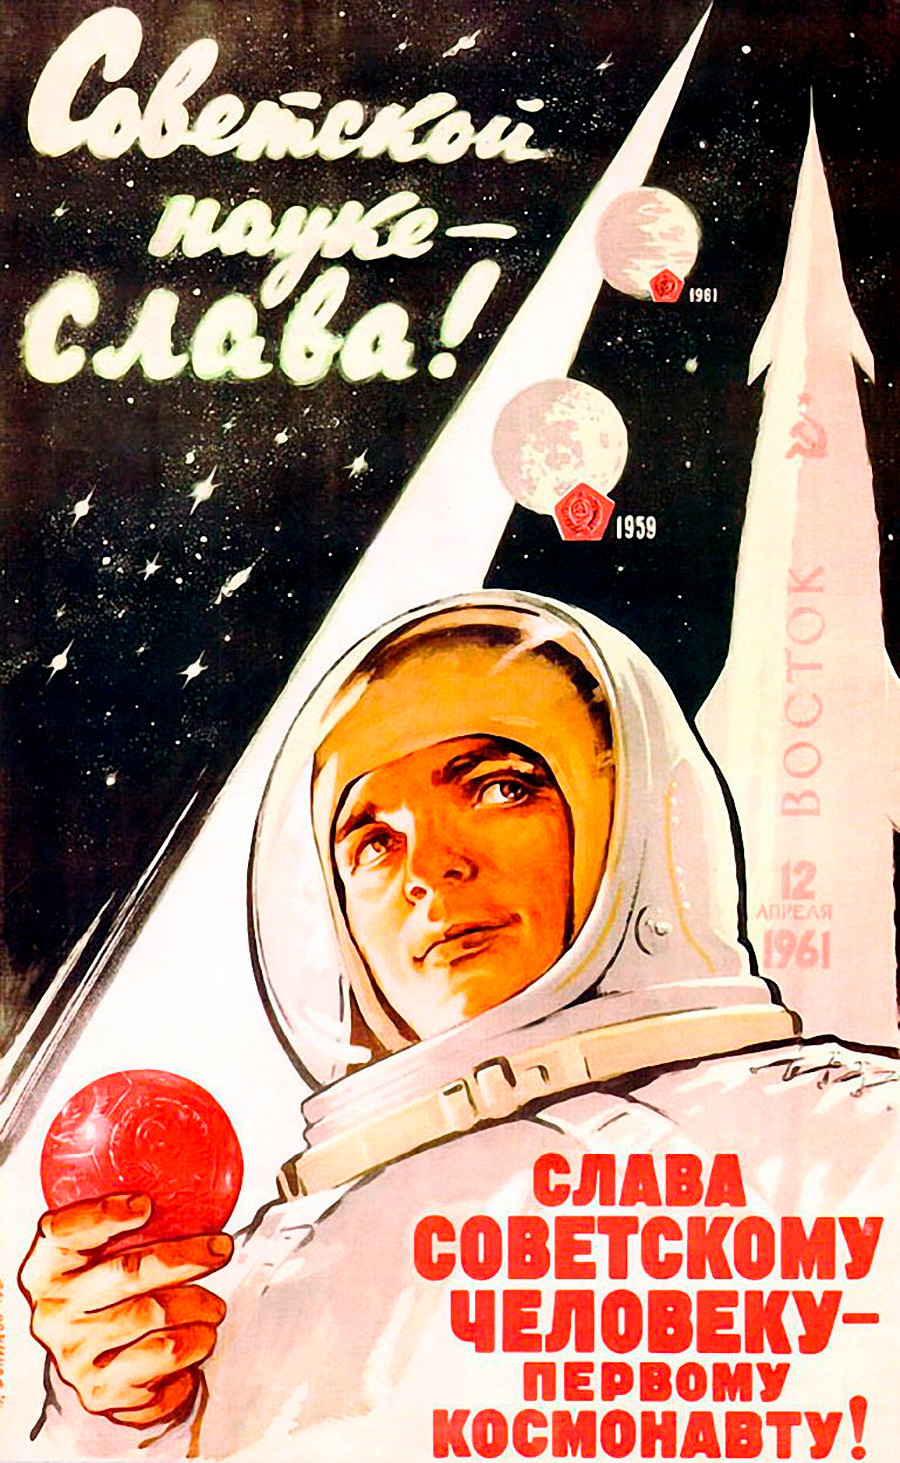 « Gloire à la science soviétique ! Gloire à l’homme soviétique, le premier cosmonaute ! »